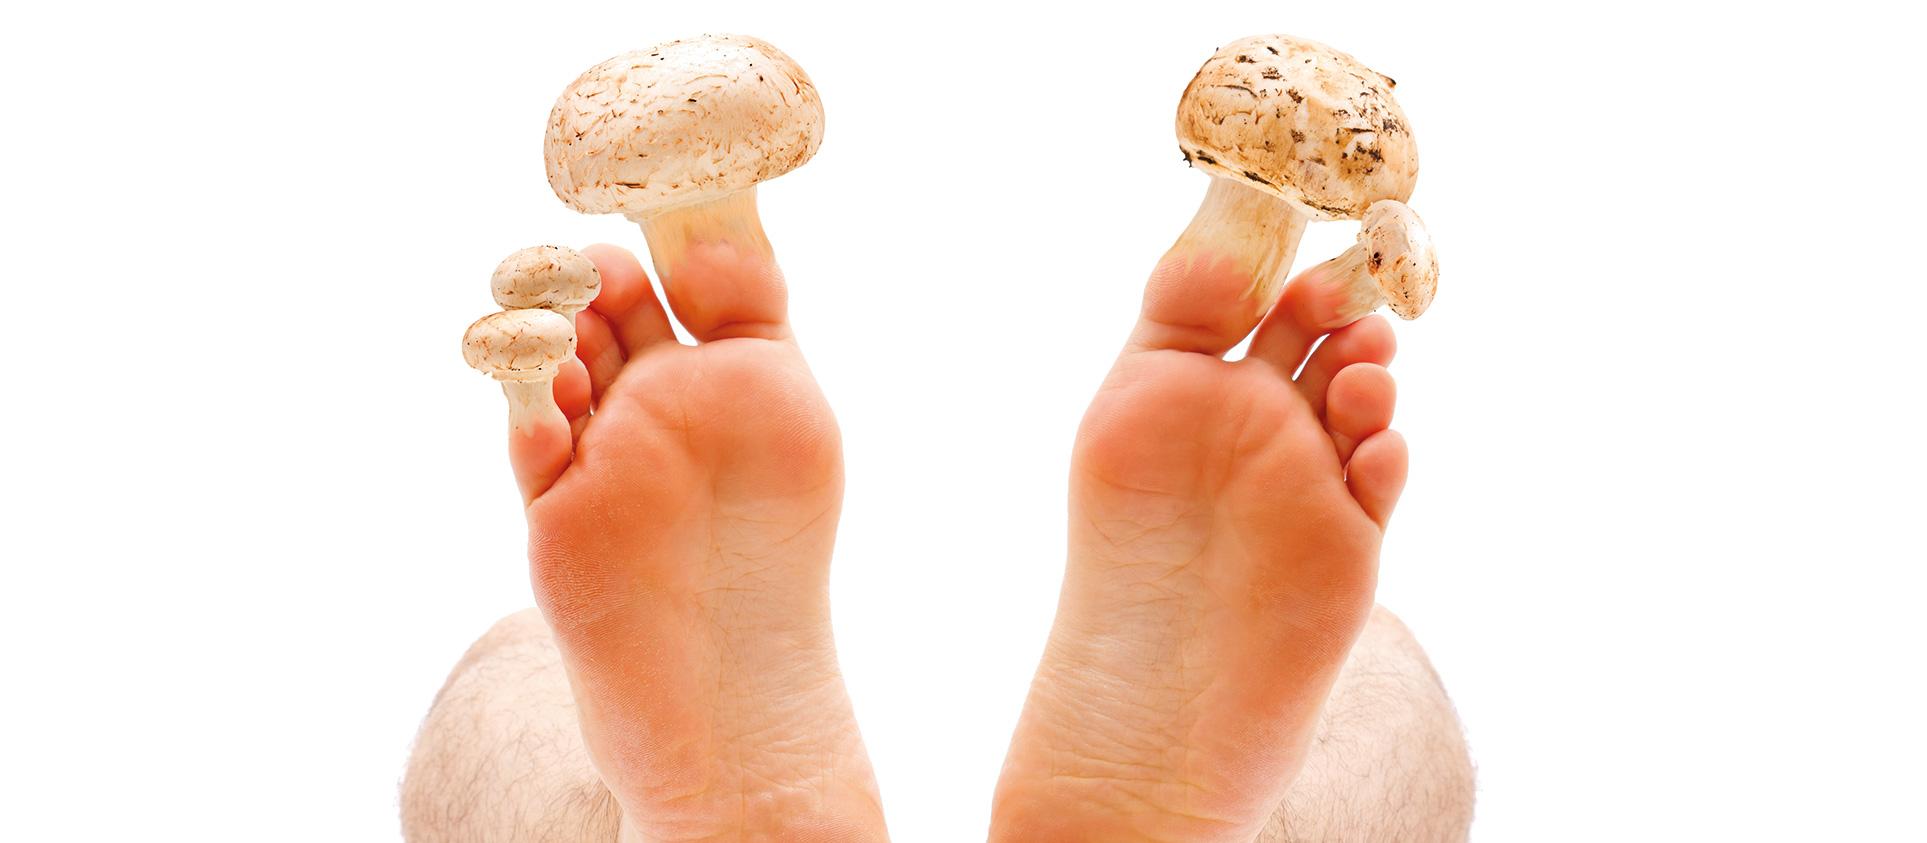 toenail fungus mushroom